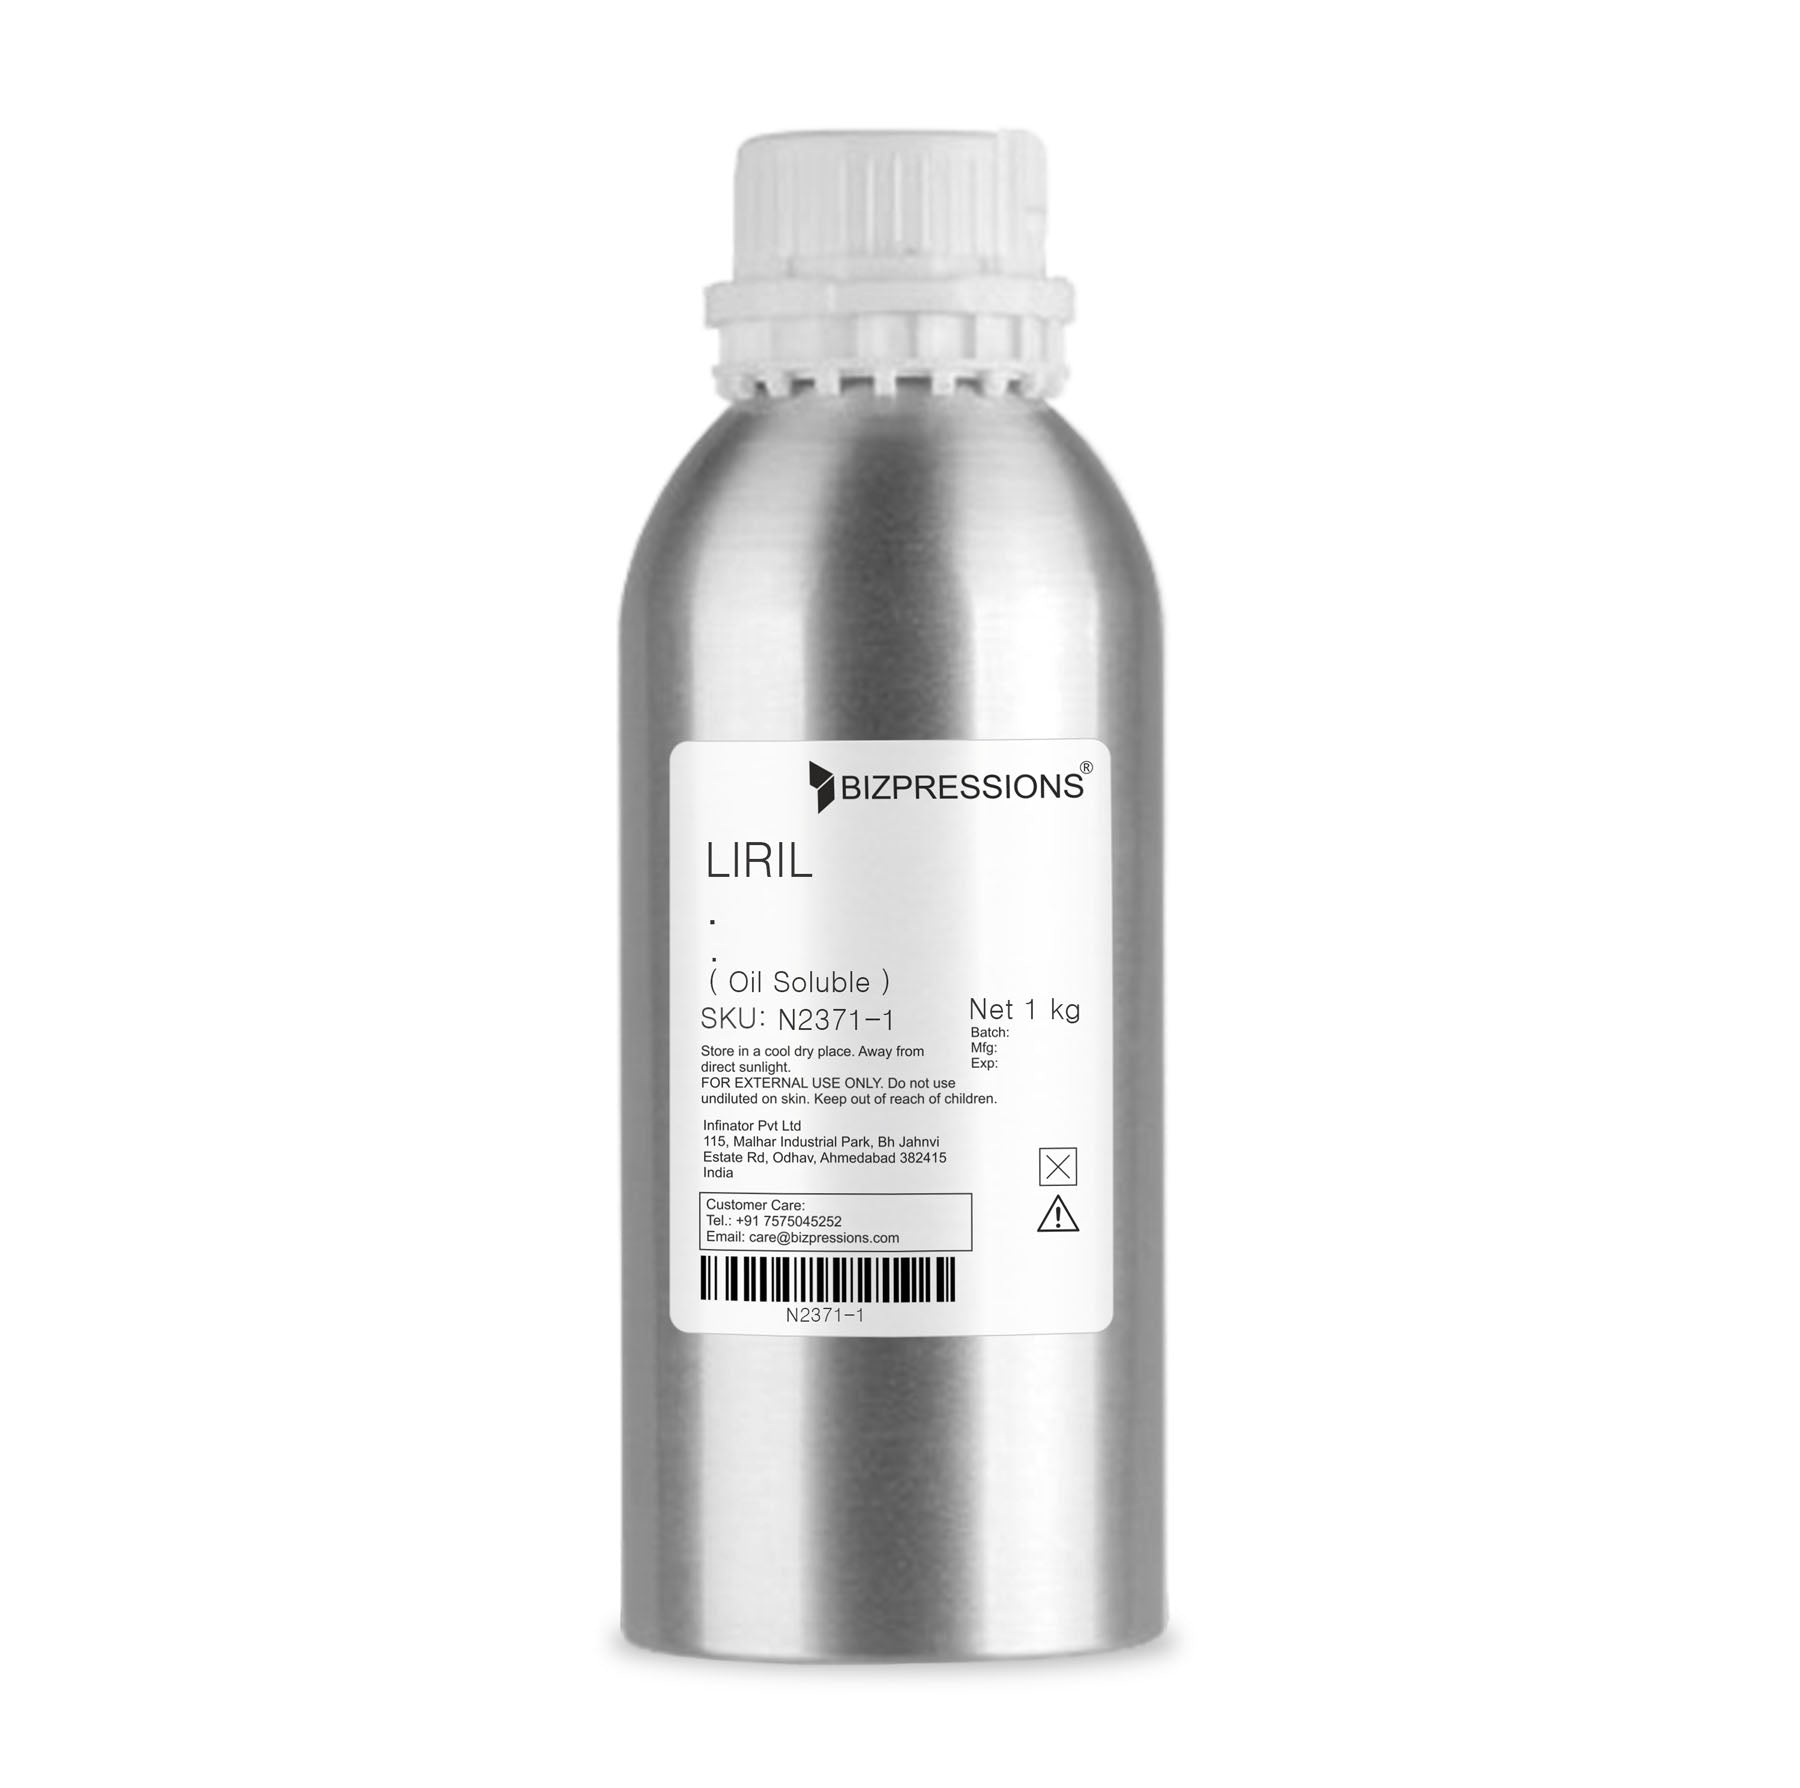 LIRIL - Fragrance ( Oil Soluble ) - 1 kg